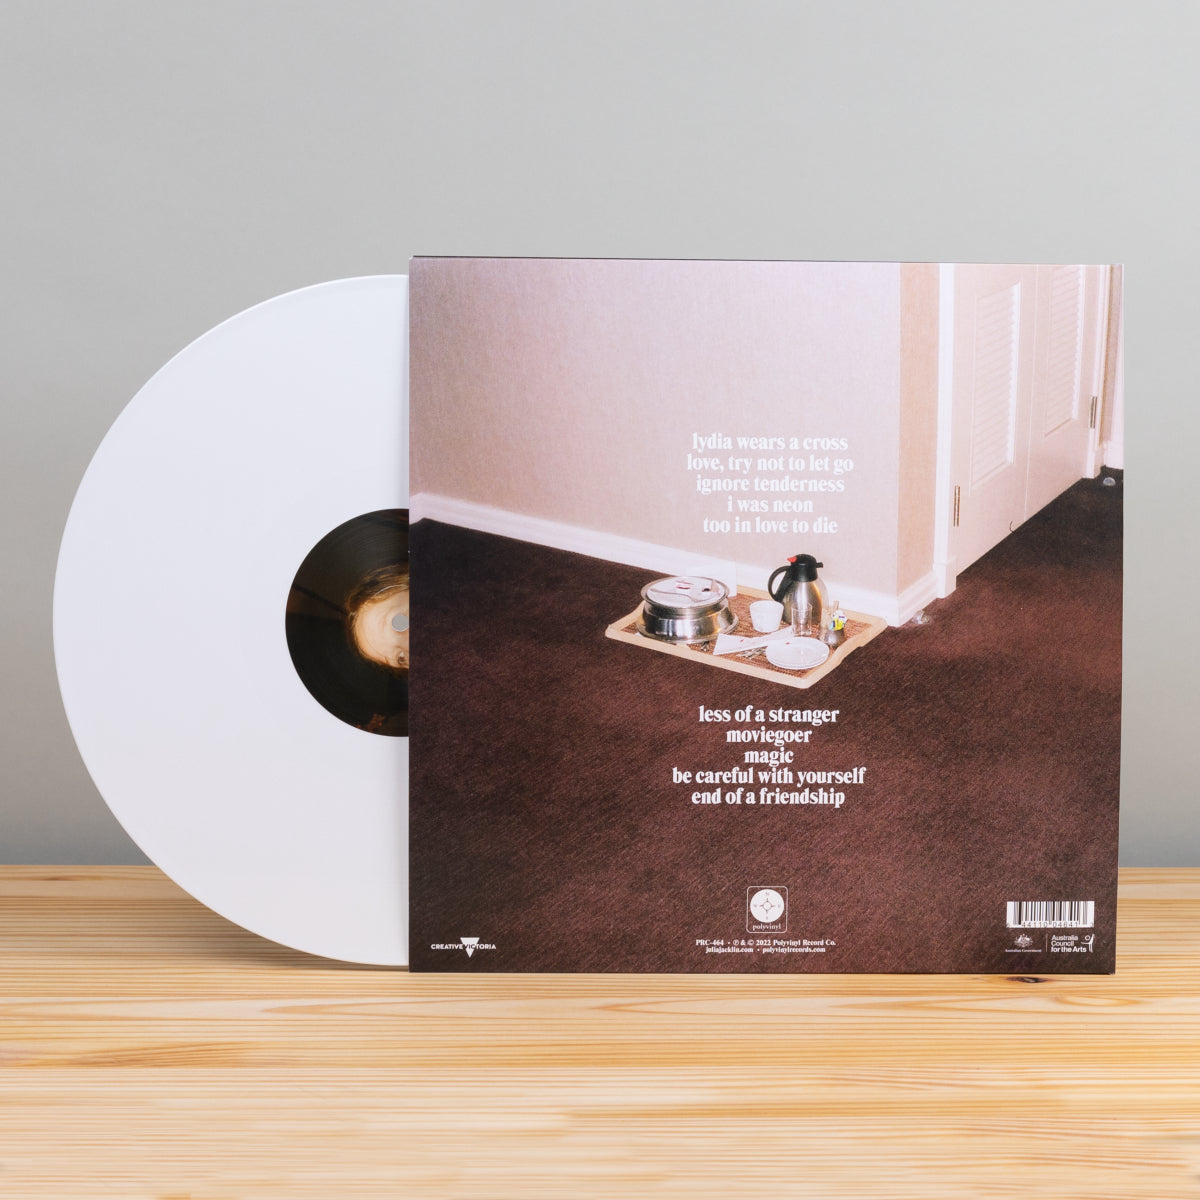 PRE PLEASURE LP (White Vinyl)